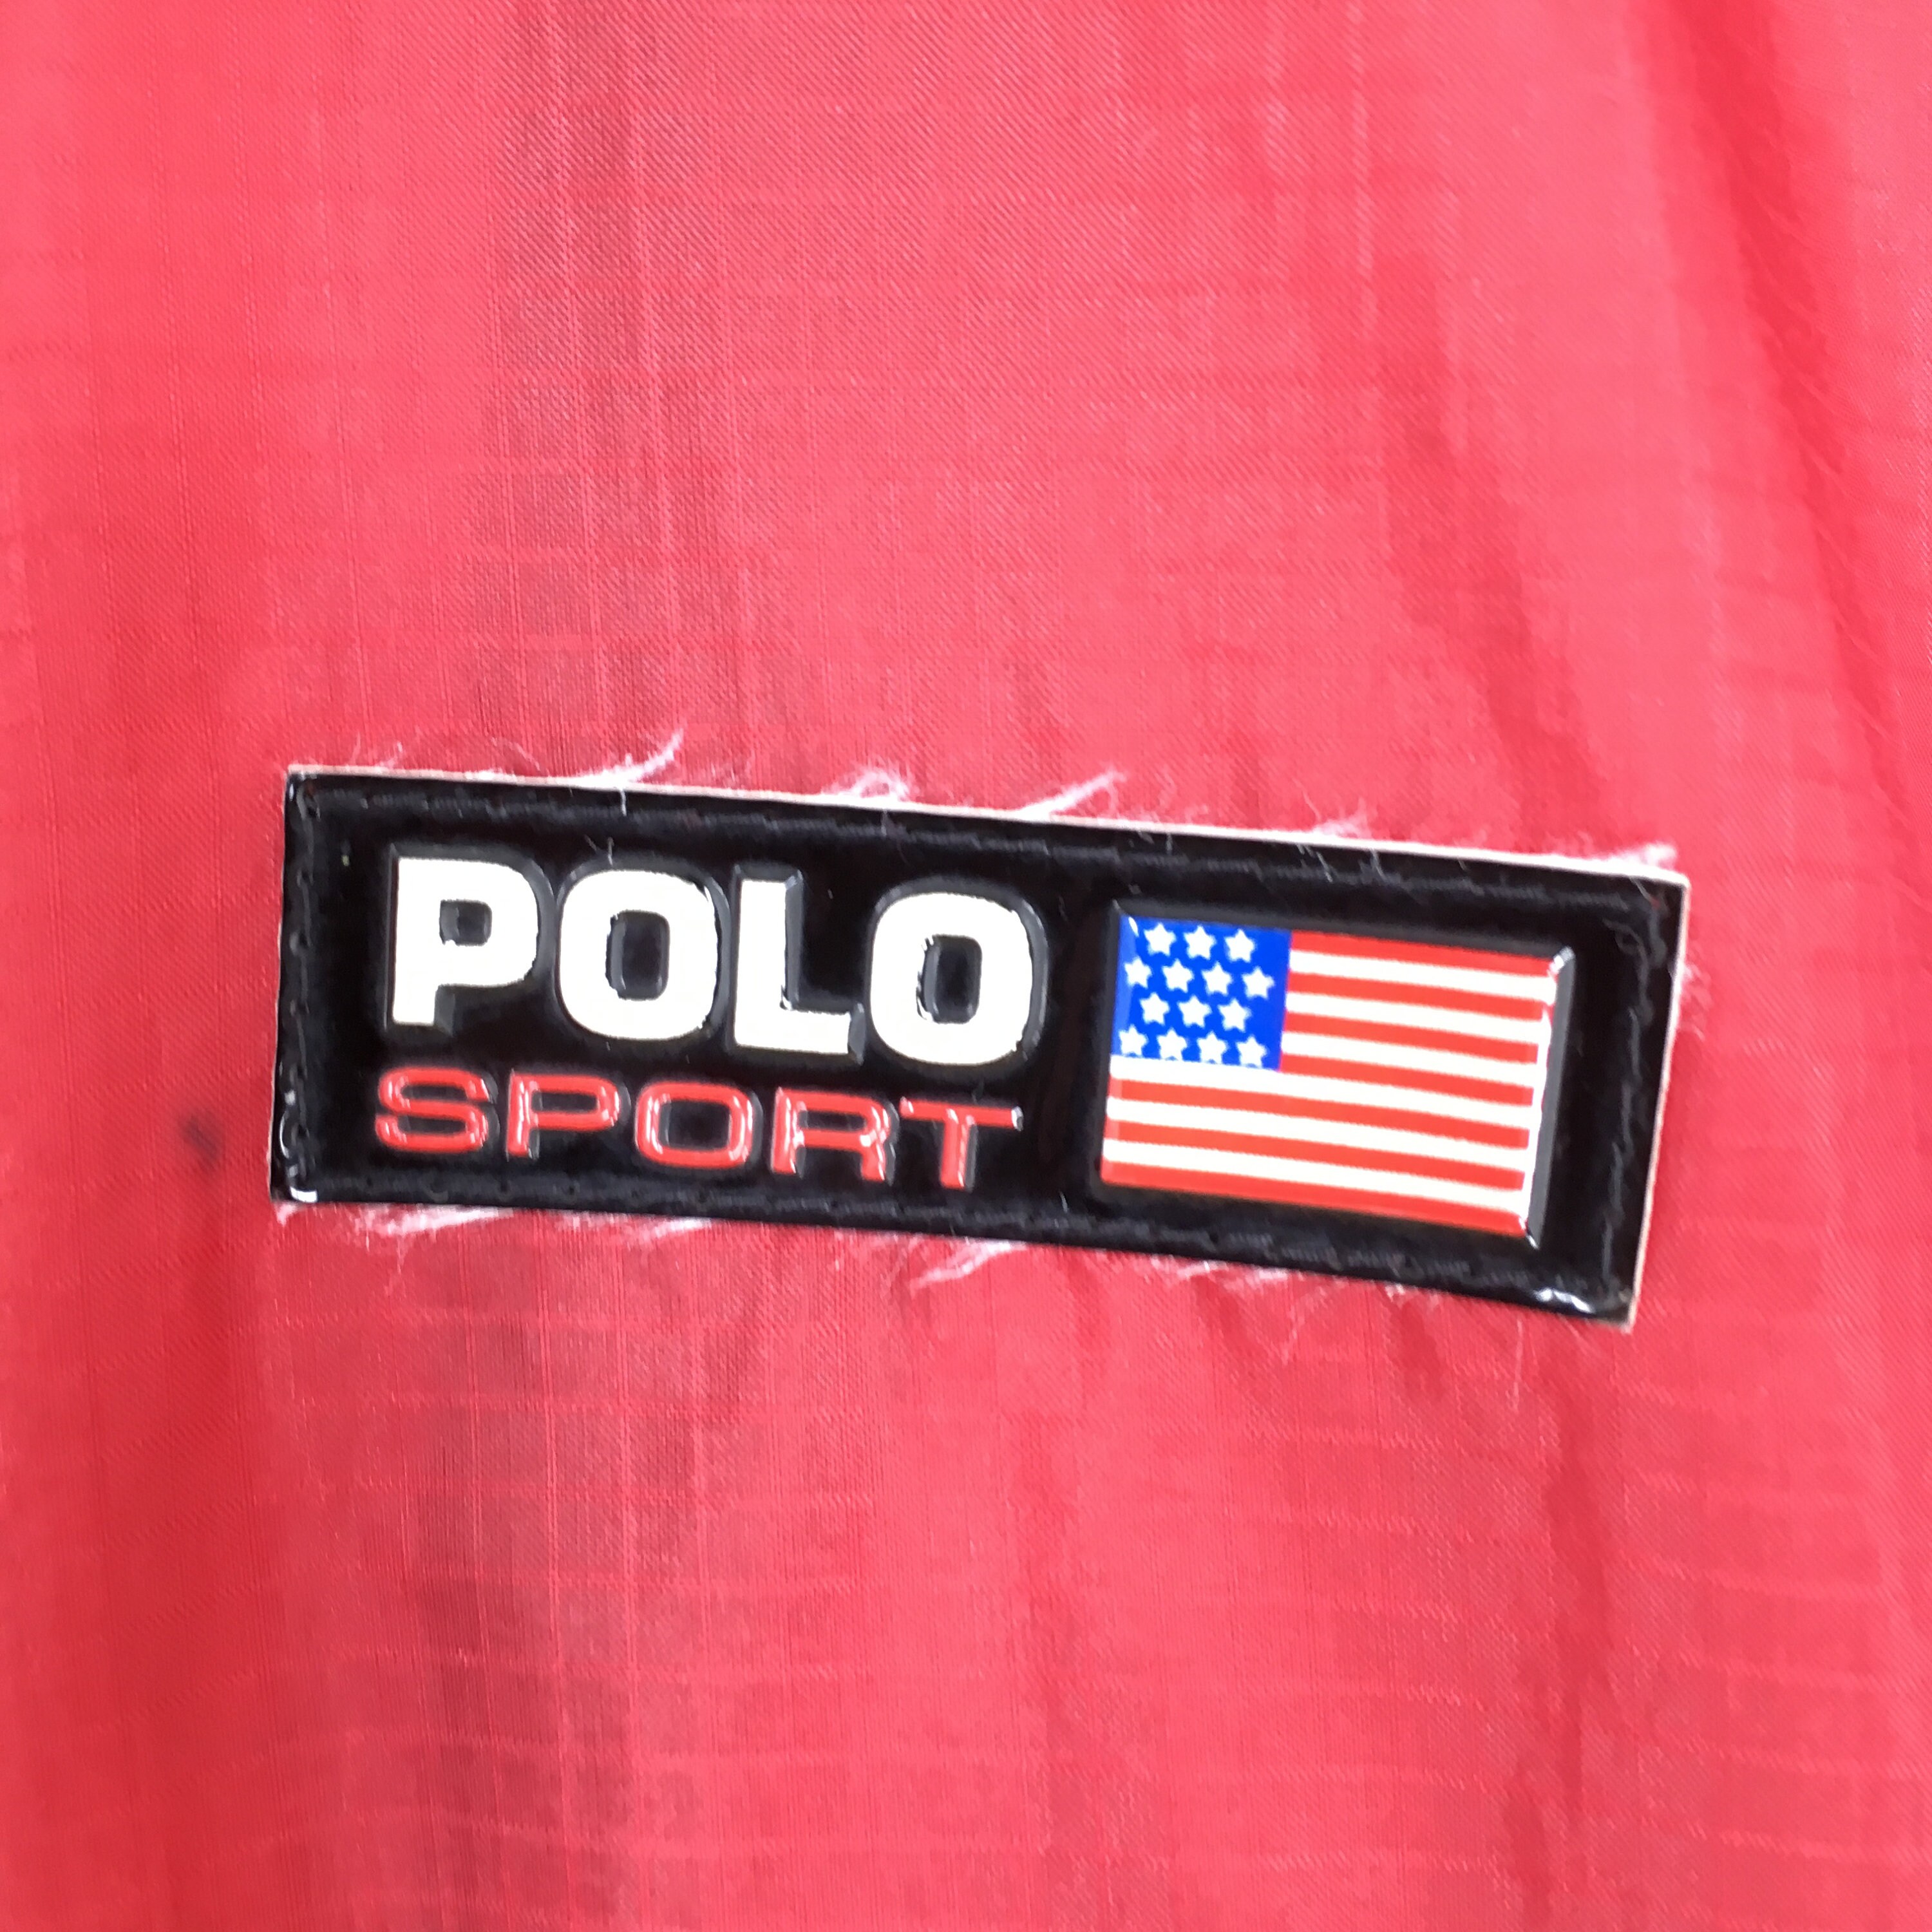 Polo Sport Ralph Lauren Windbreaker Jacket Small Vintage 90s - Etsy